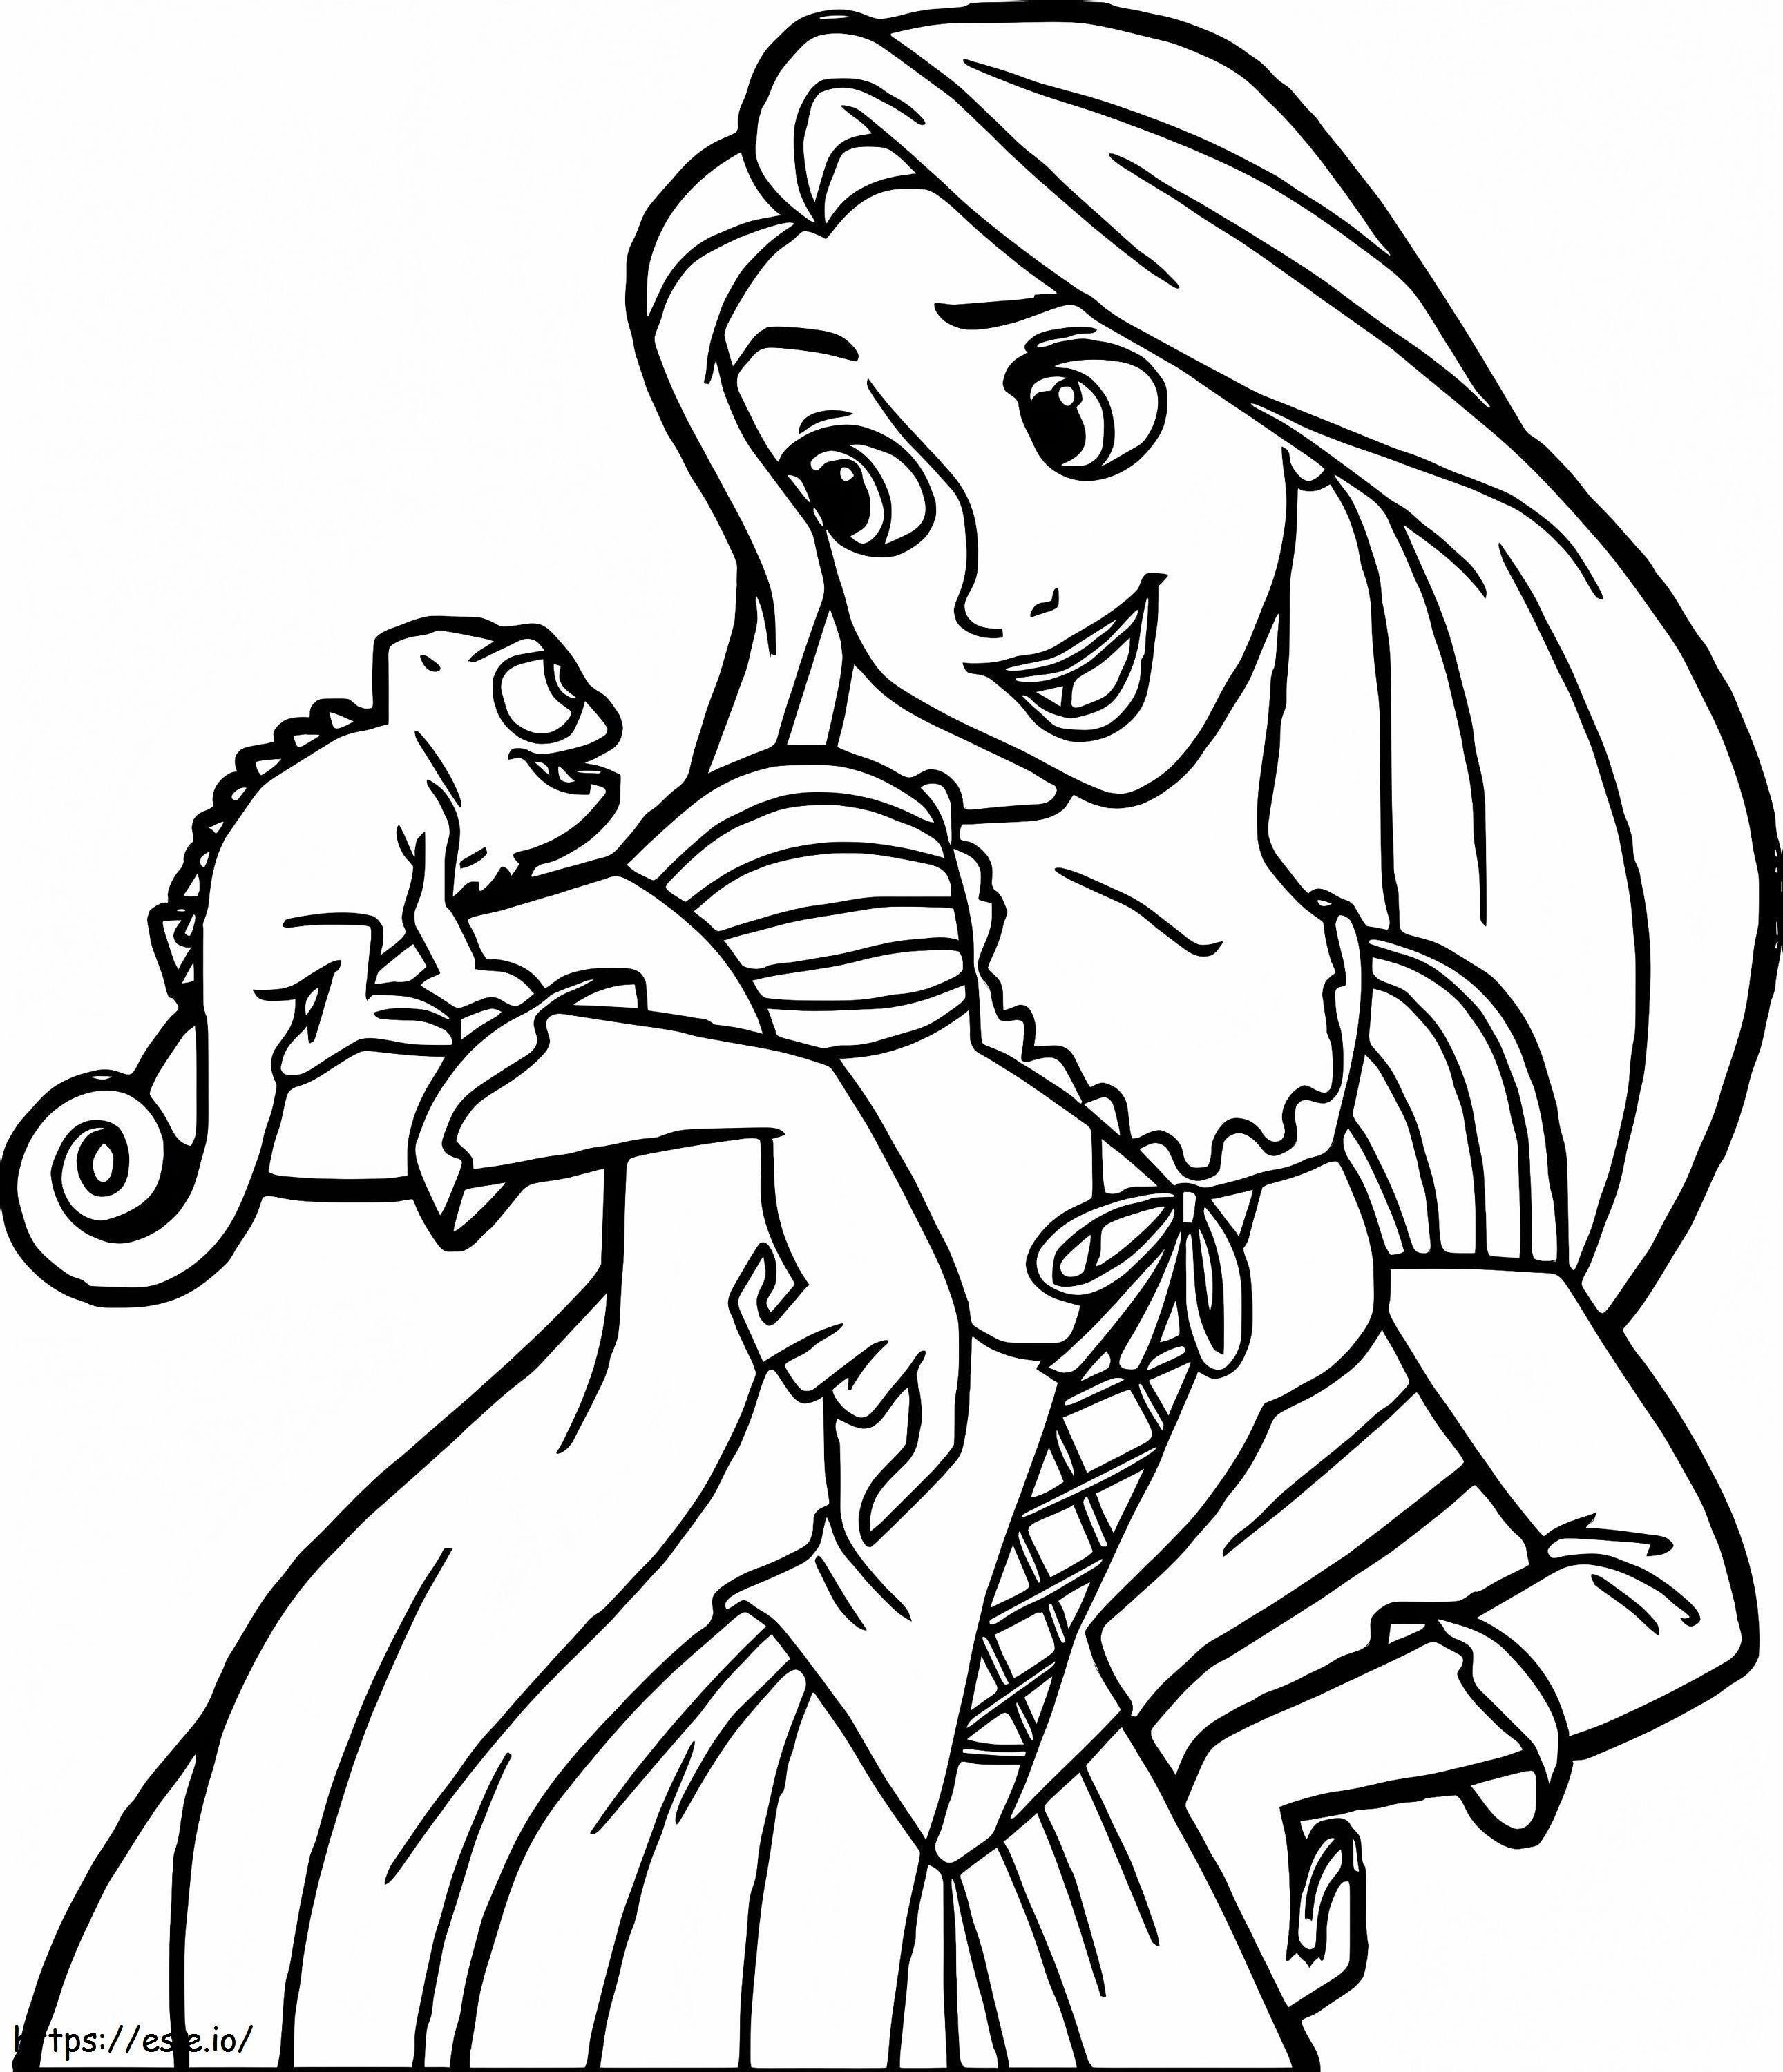 Happy Princess Rapunzel 2 coloring page